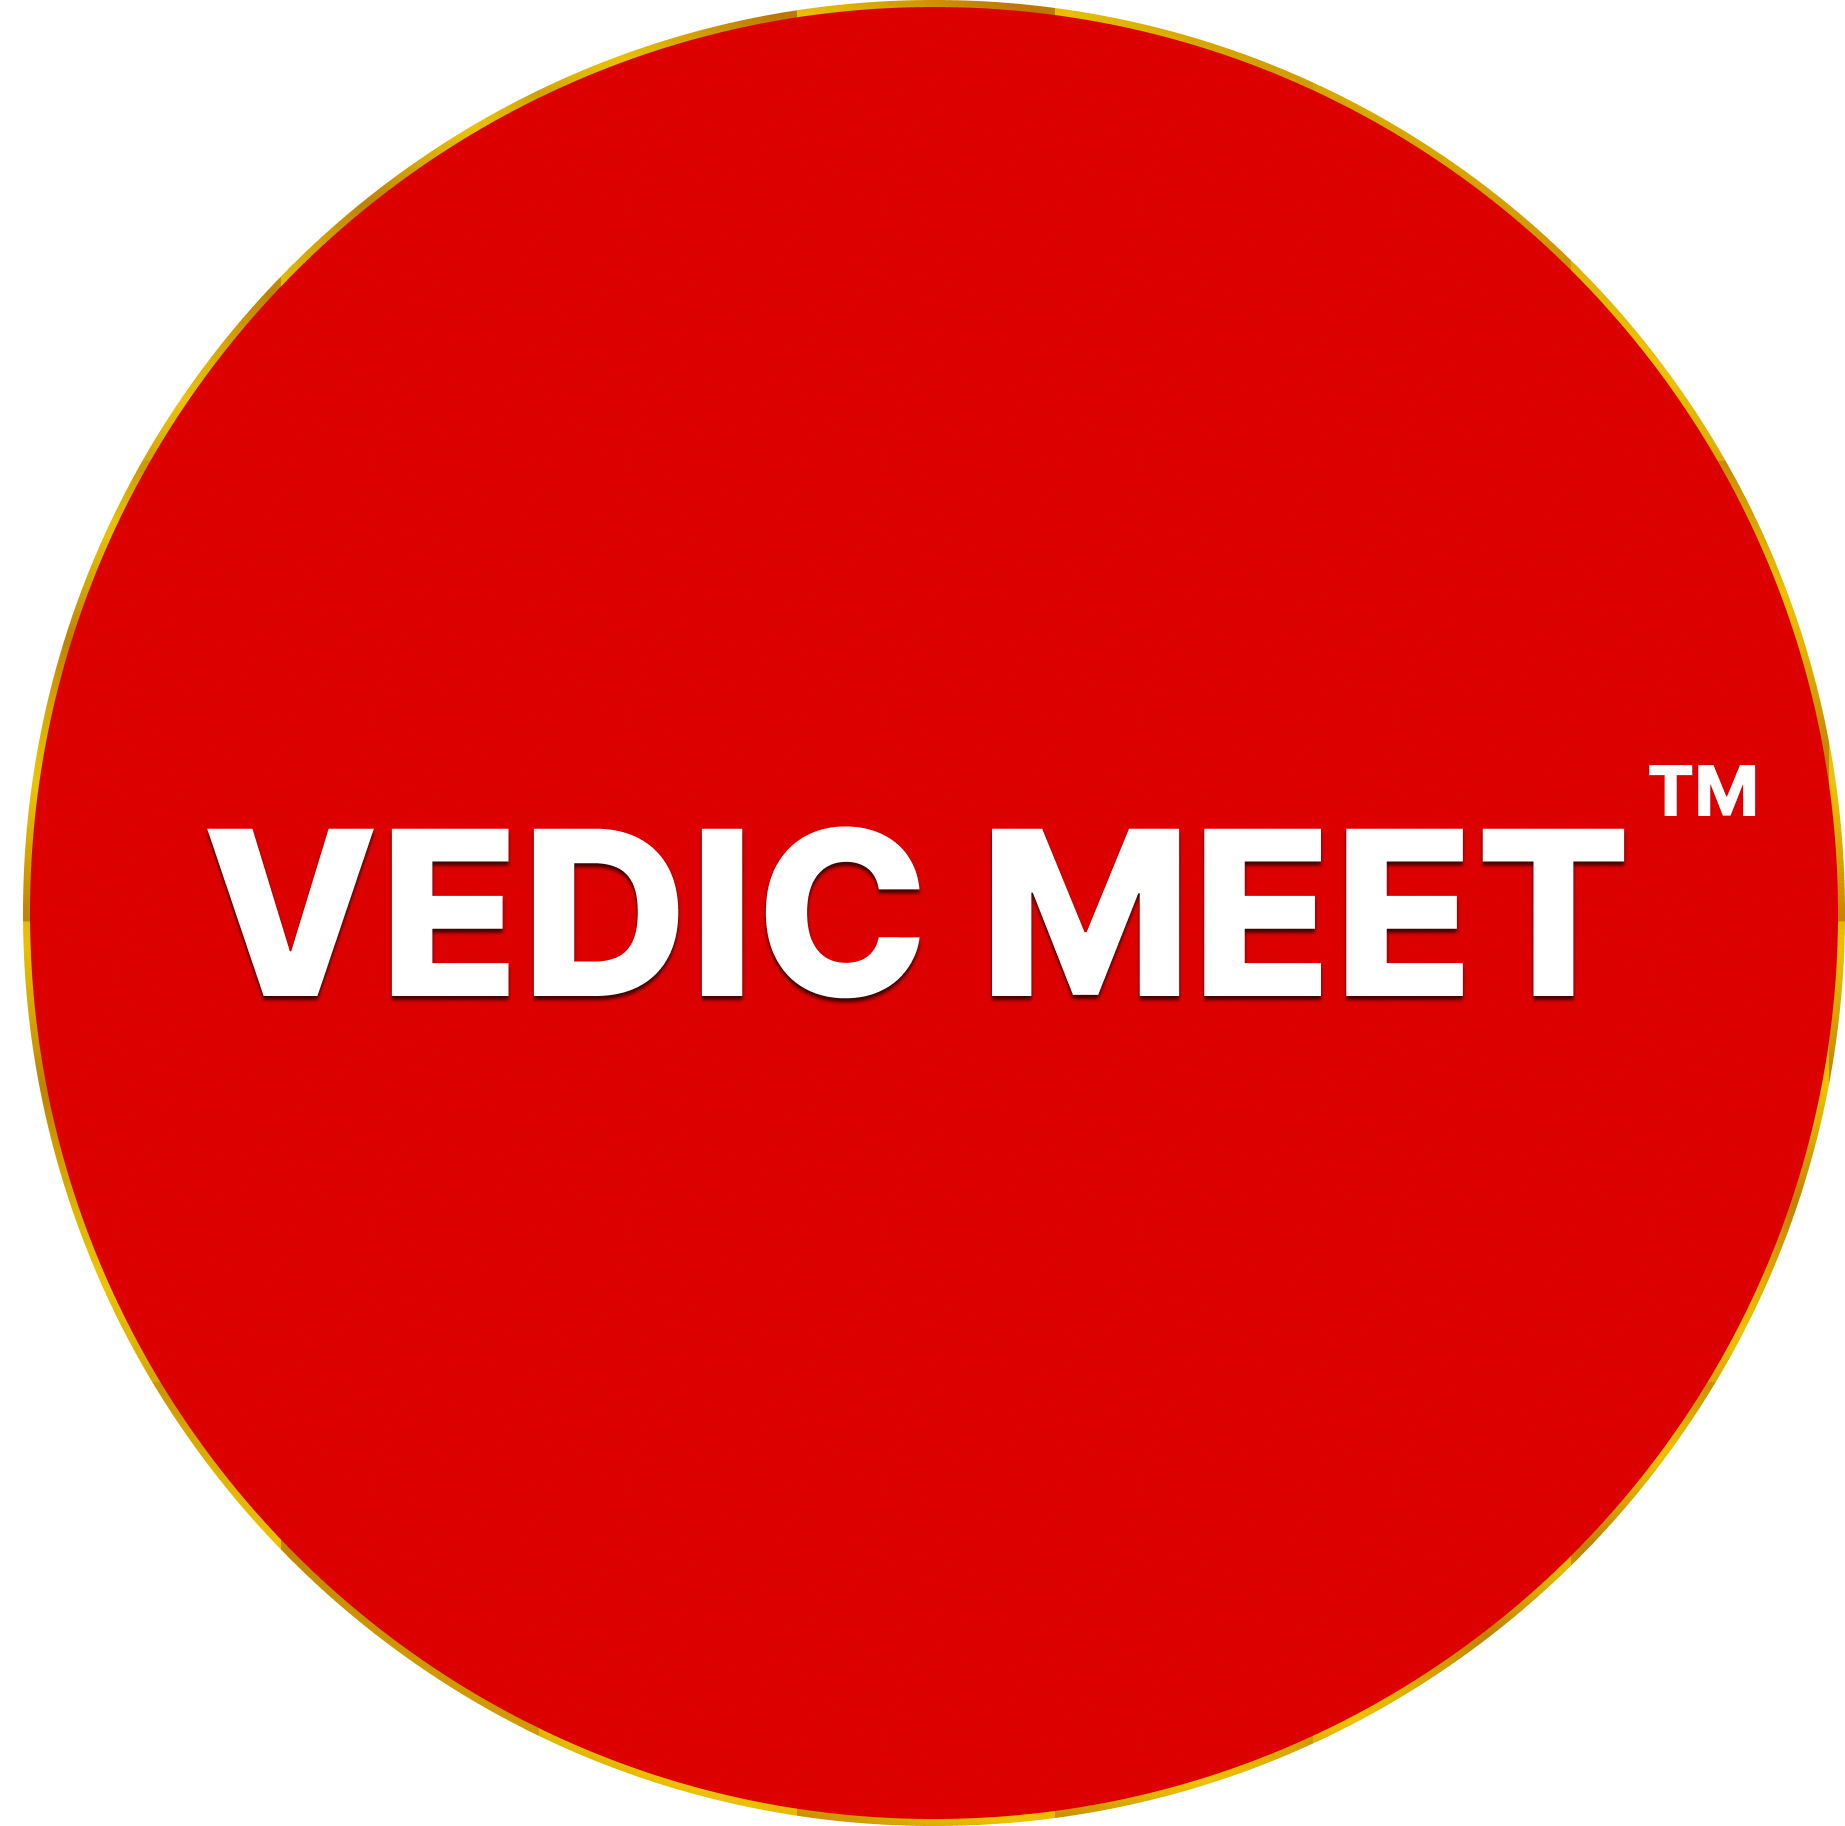 Vedicmeet1